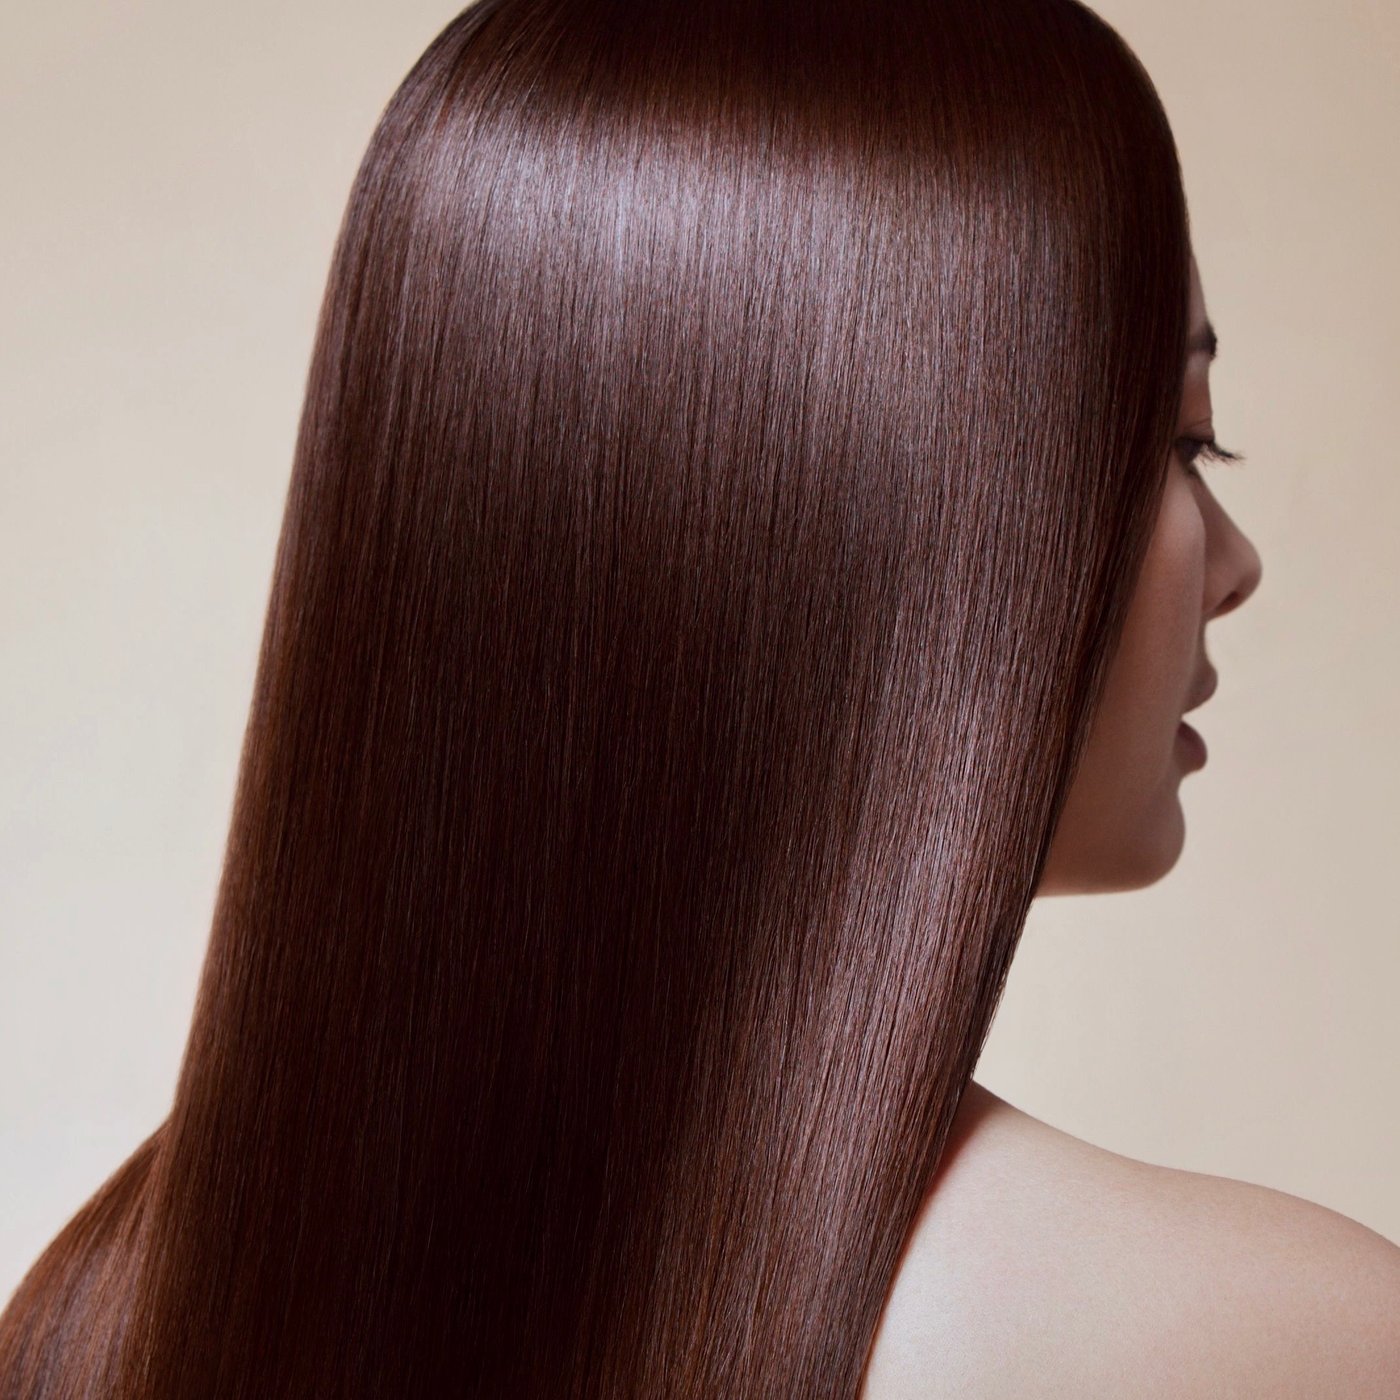 Кератиновое выпрямление волос: плюсы и минусы, отзывы за и против восстановления кератином